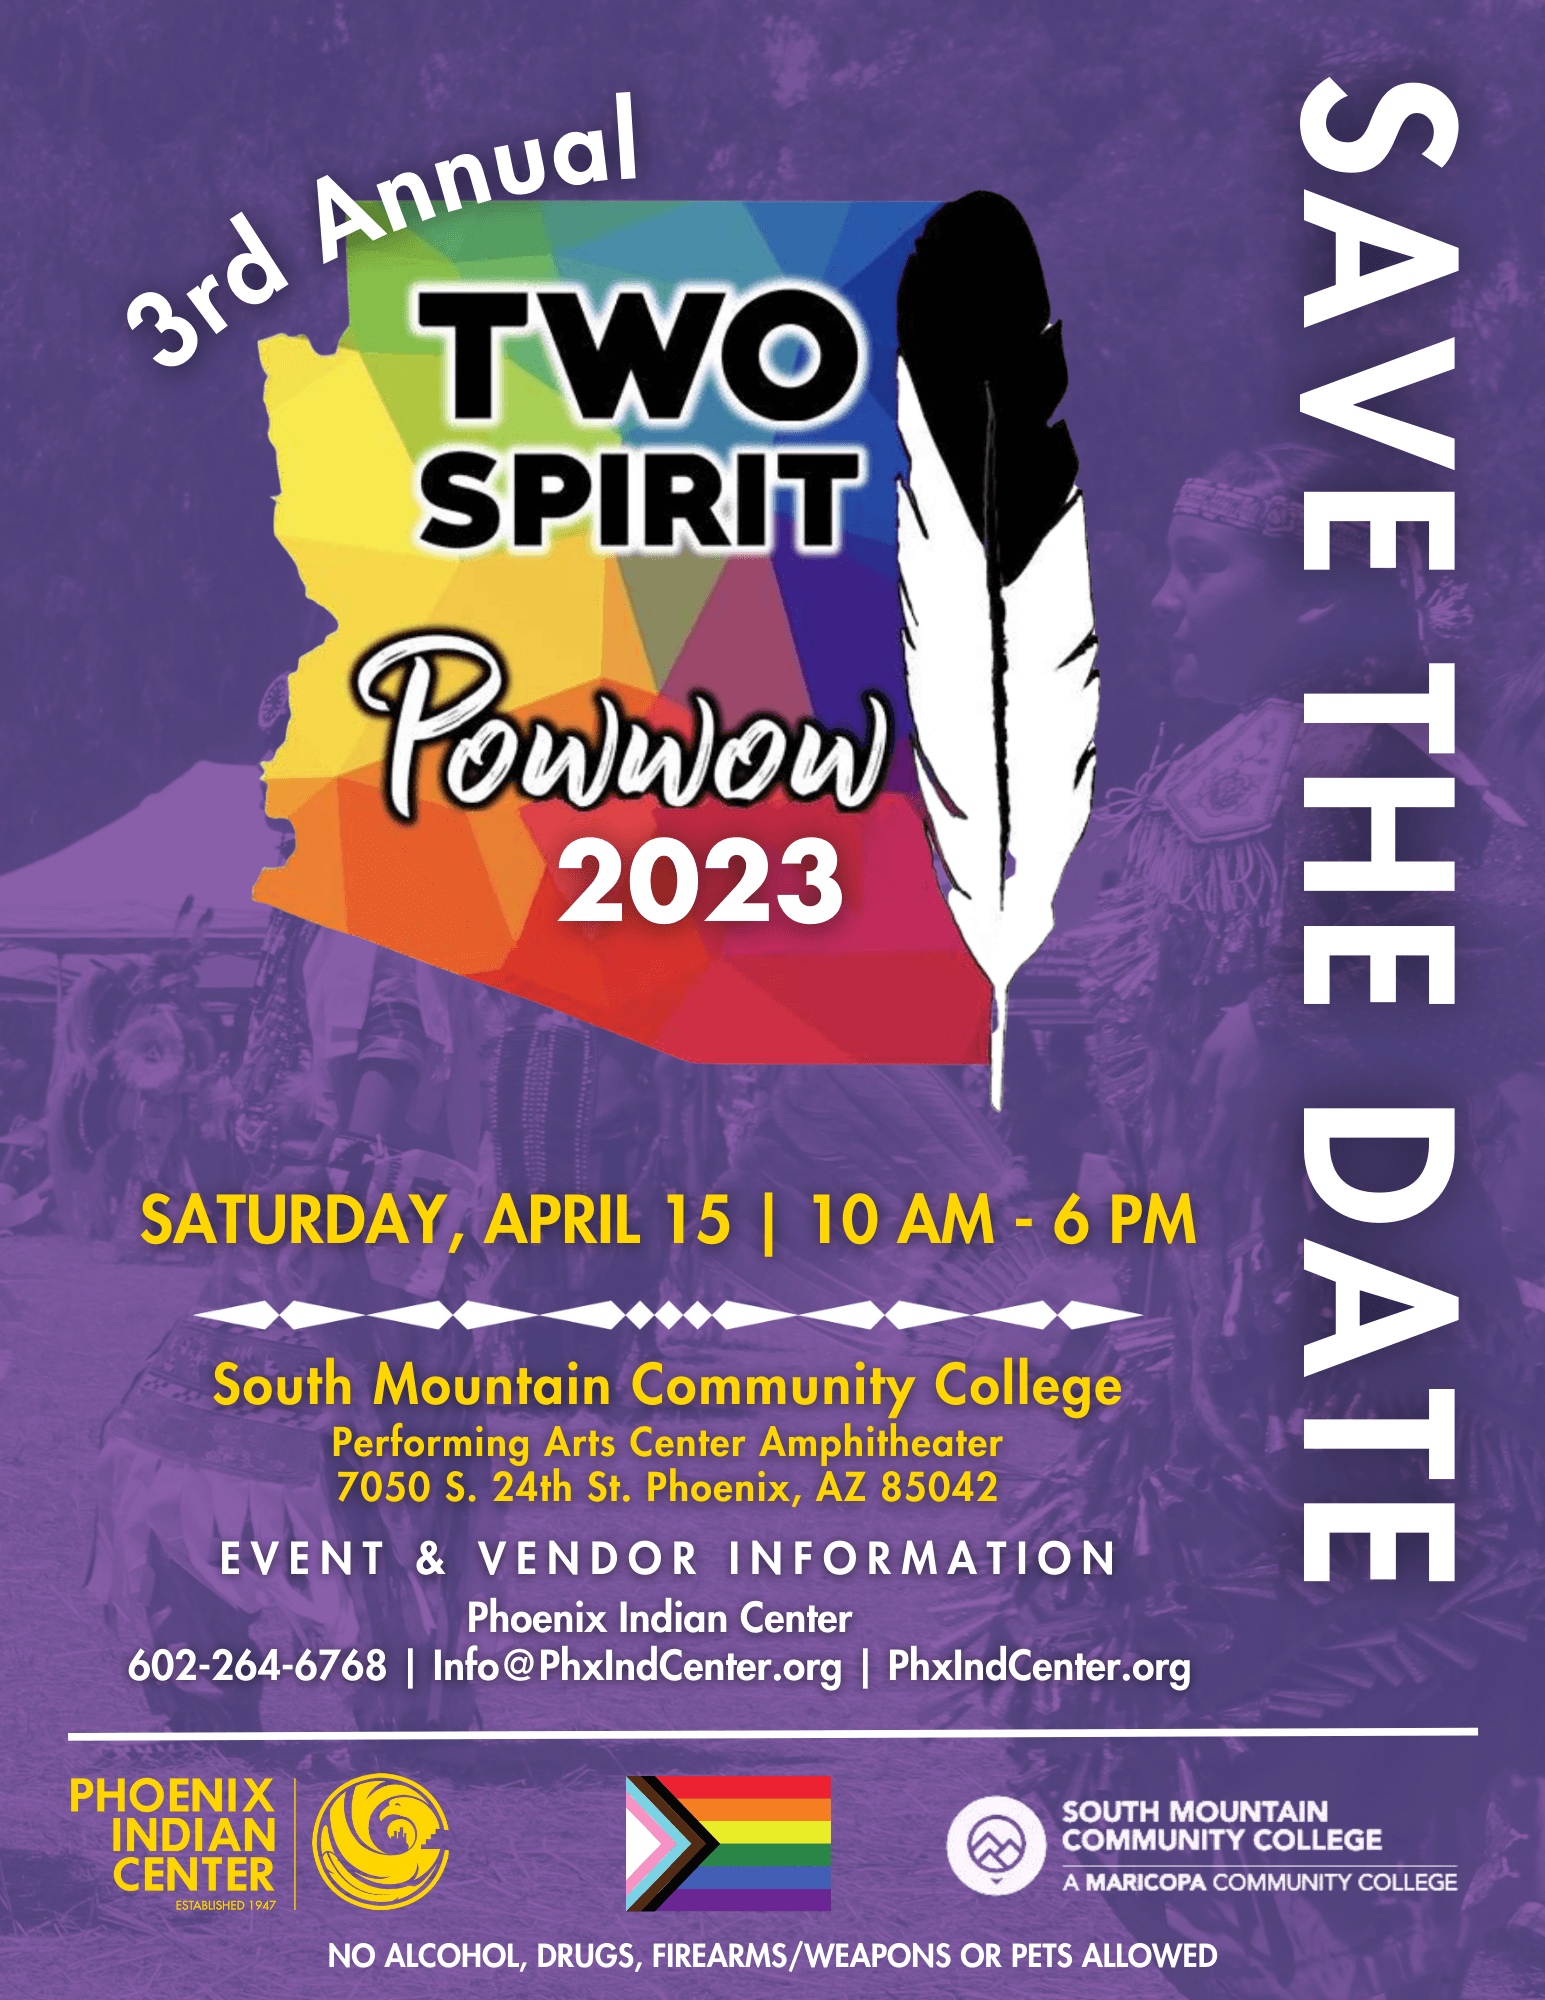 Two Spirit Powwow